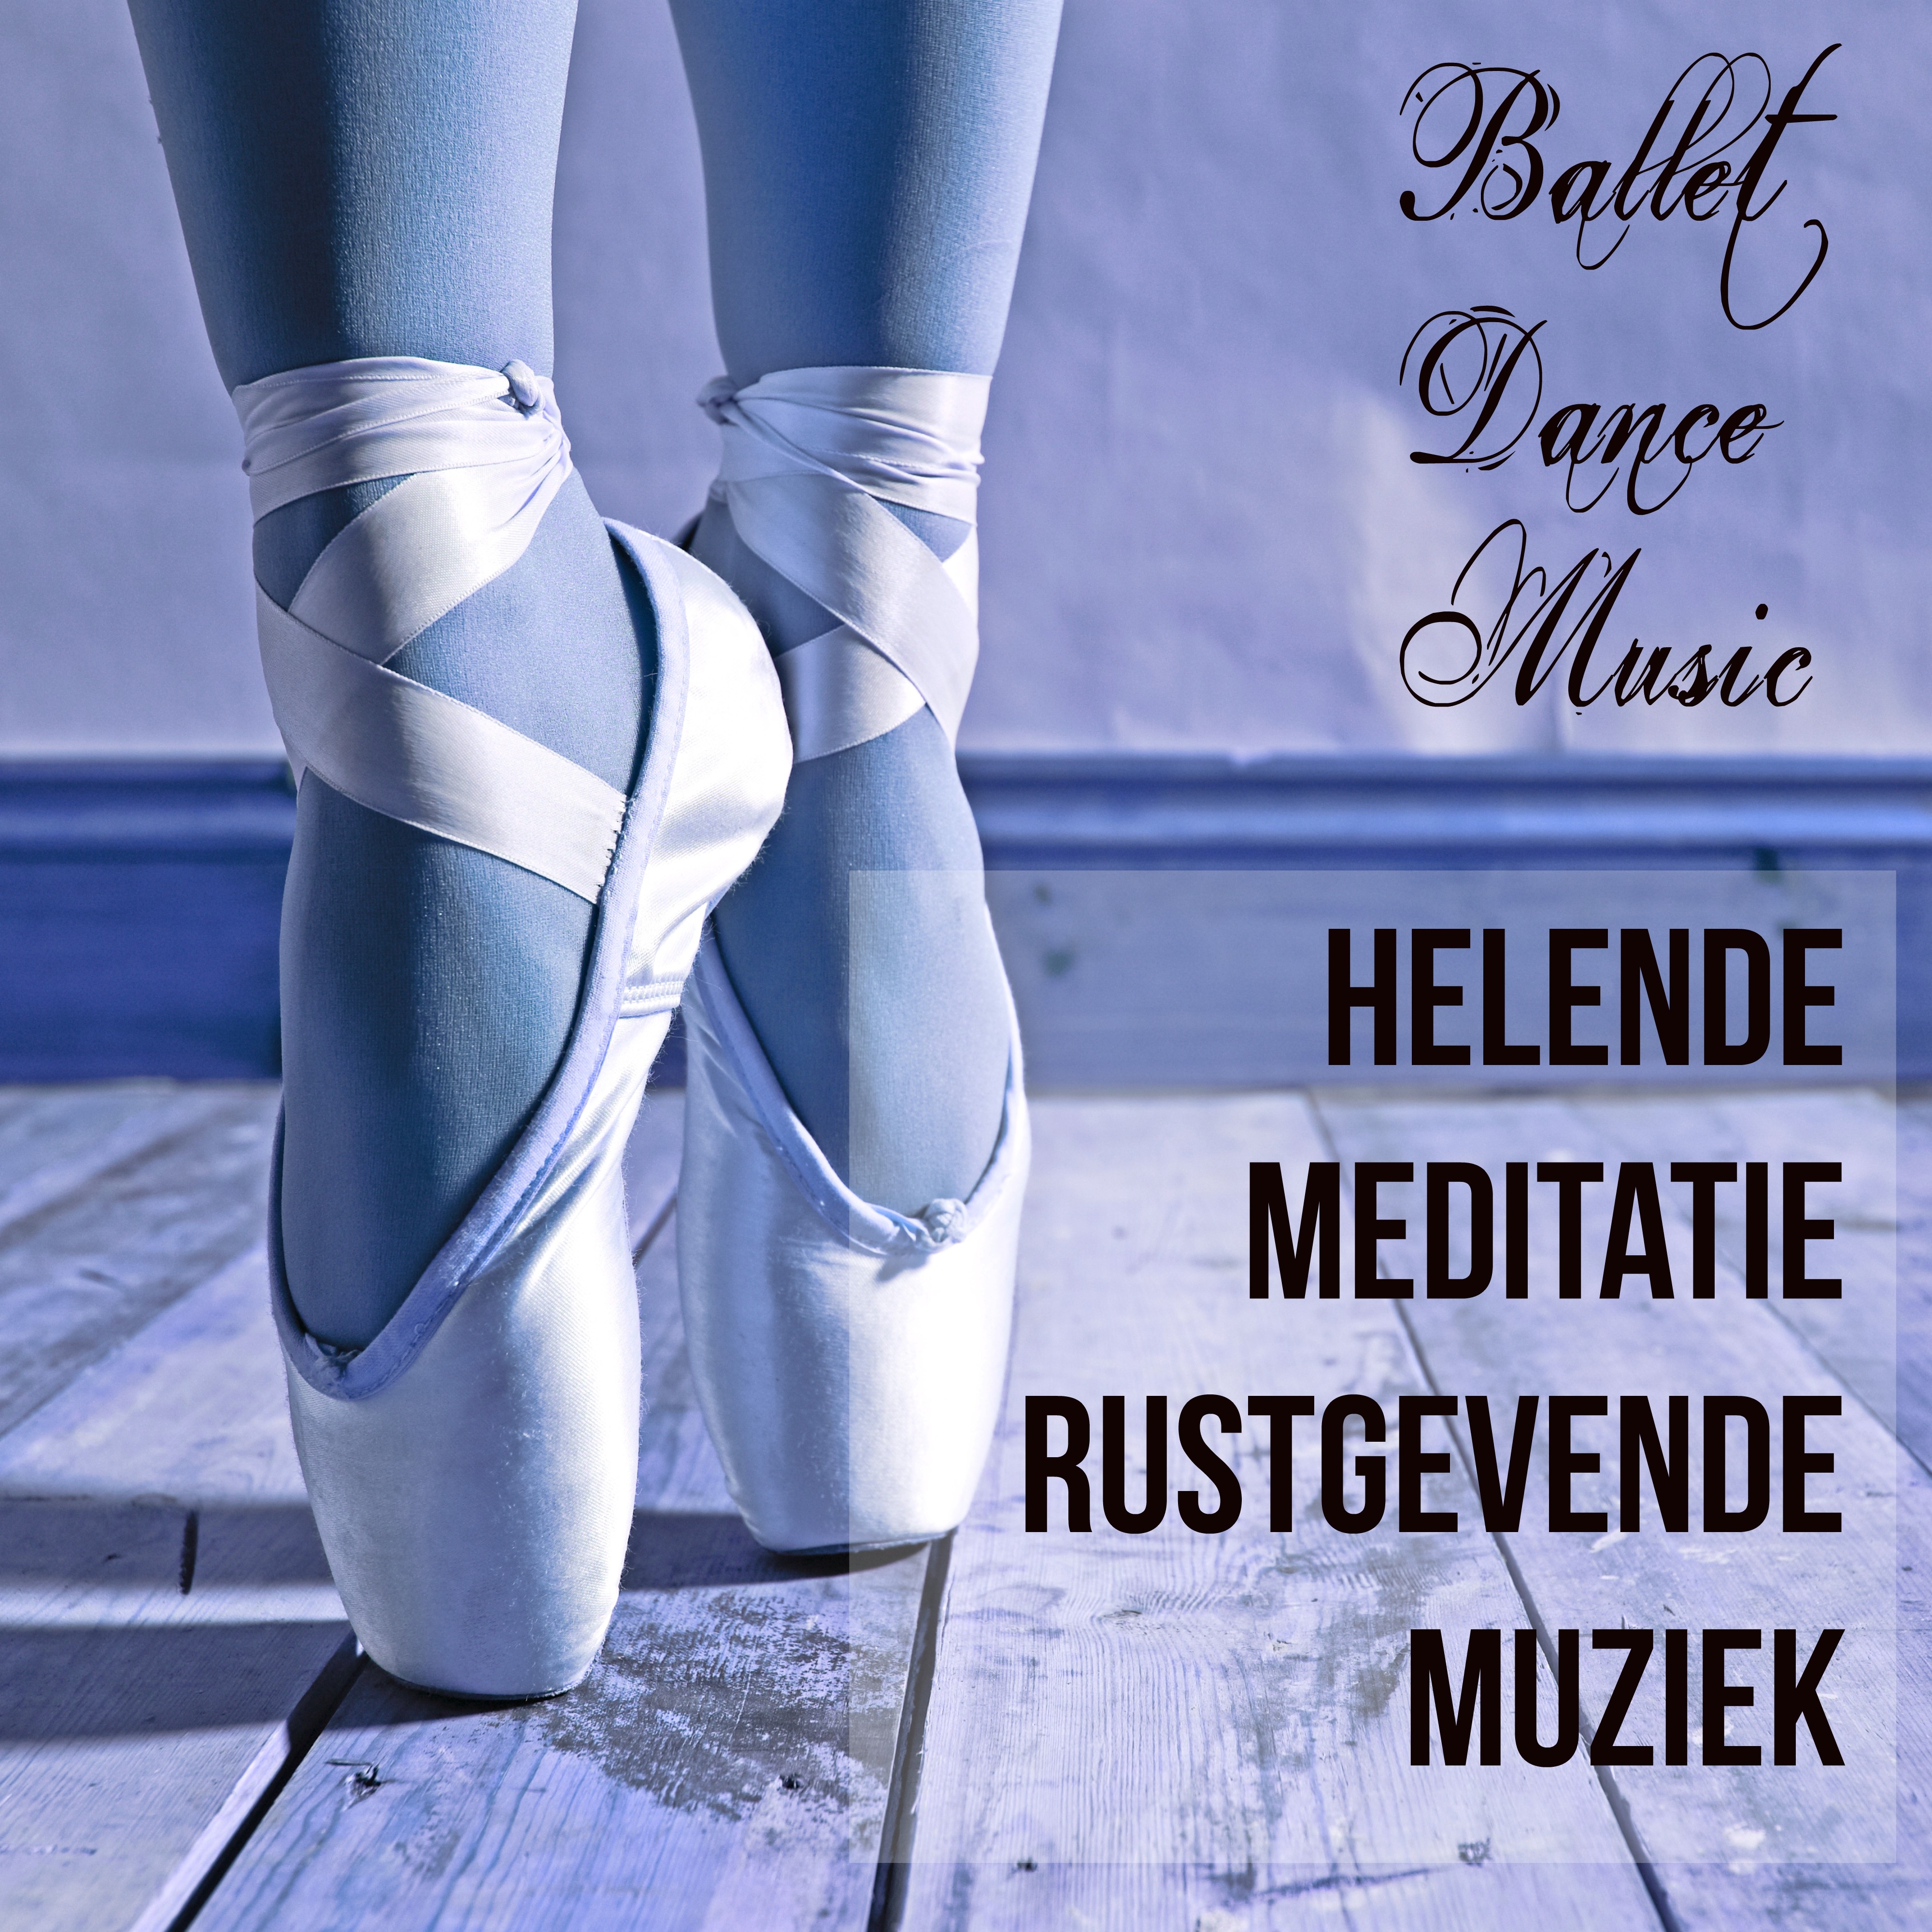 Ballet Barre (Pure Romance)